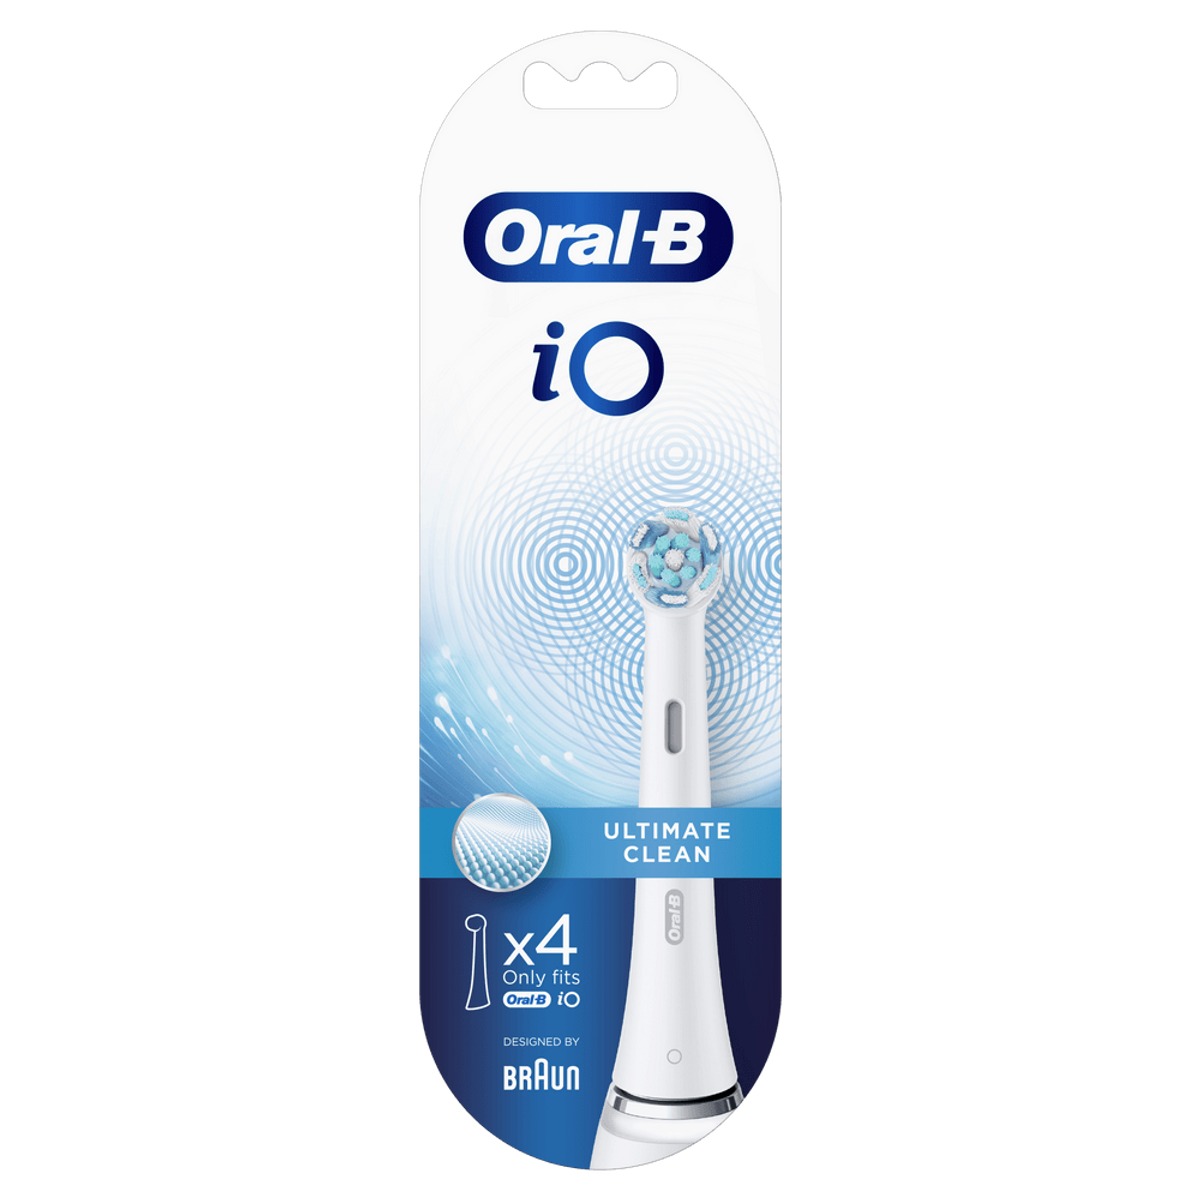 ORAL-B Oral-B iO Ultimate Elektrischer 80335623 Zahnbürstenkopf Weiß Stück(e) Aufsteckbürste 4 Clean